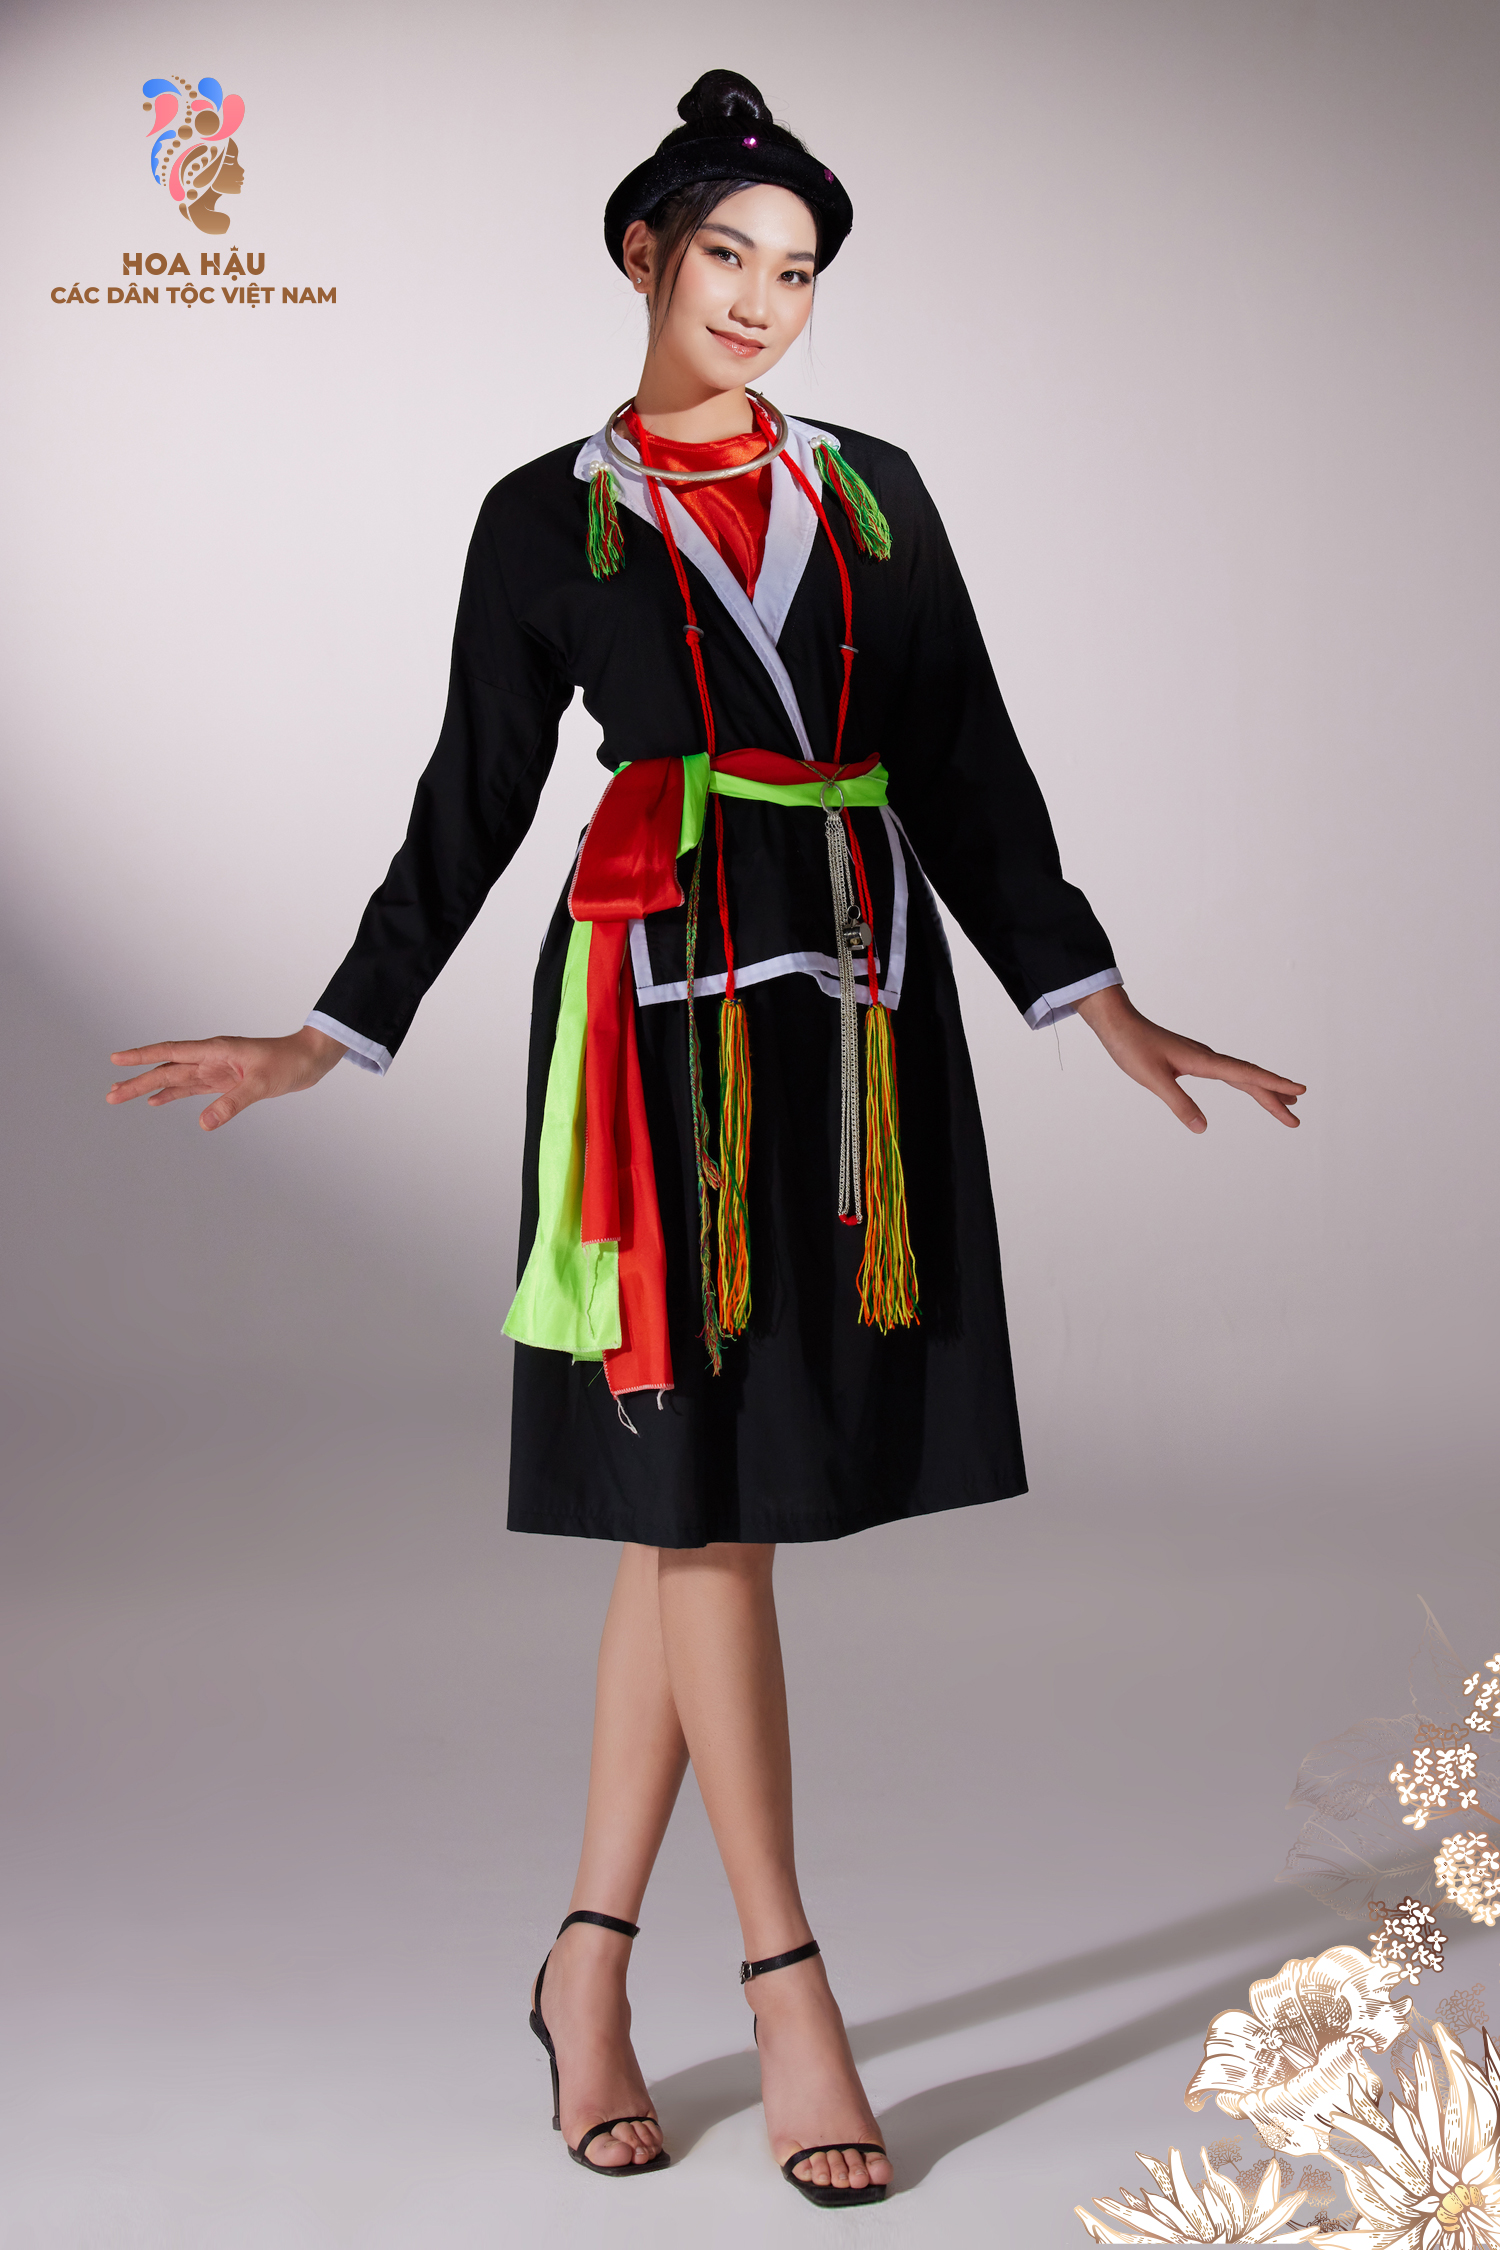 Độc đáo trang phục, dân tộc: Những chiếc trang phục mang tính dân tộc độc đáo luôn là điểm nhấn thu hút sự chú ý của người xem. Trong bức ảnh này, bạn sẽ được ngắm nhìn những bộ trang phục tuyệt đẹp được làm từ tay của các nghệ nhân tài ba, thể hiện sự đa dạng và phong phú của văn hóa truyền thống Việt Nam.